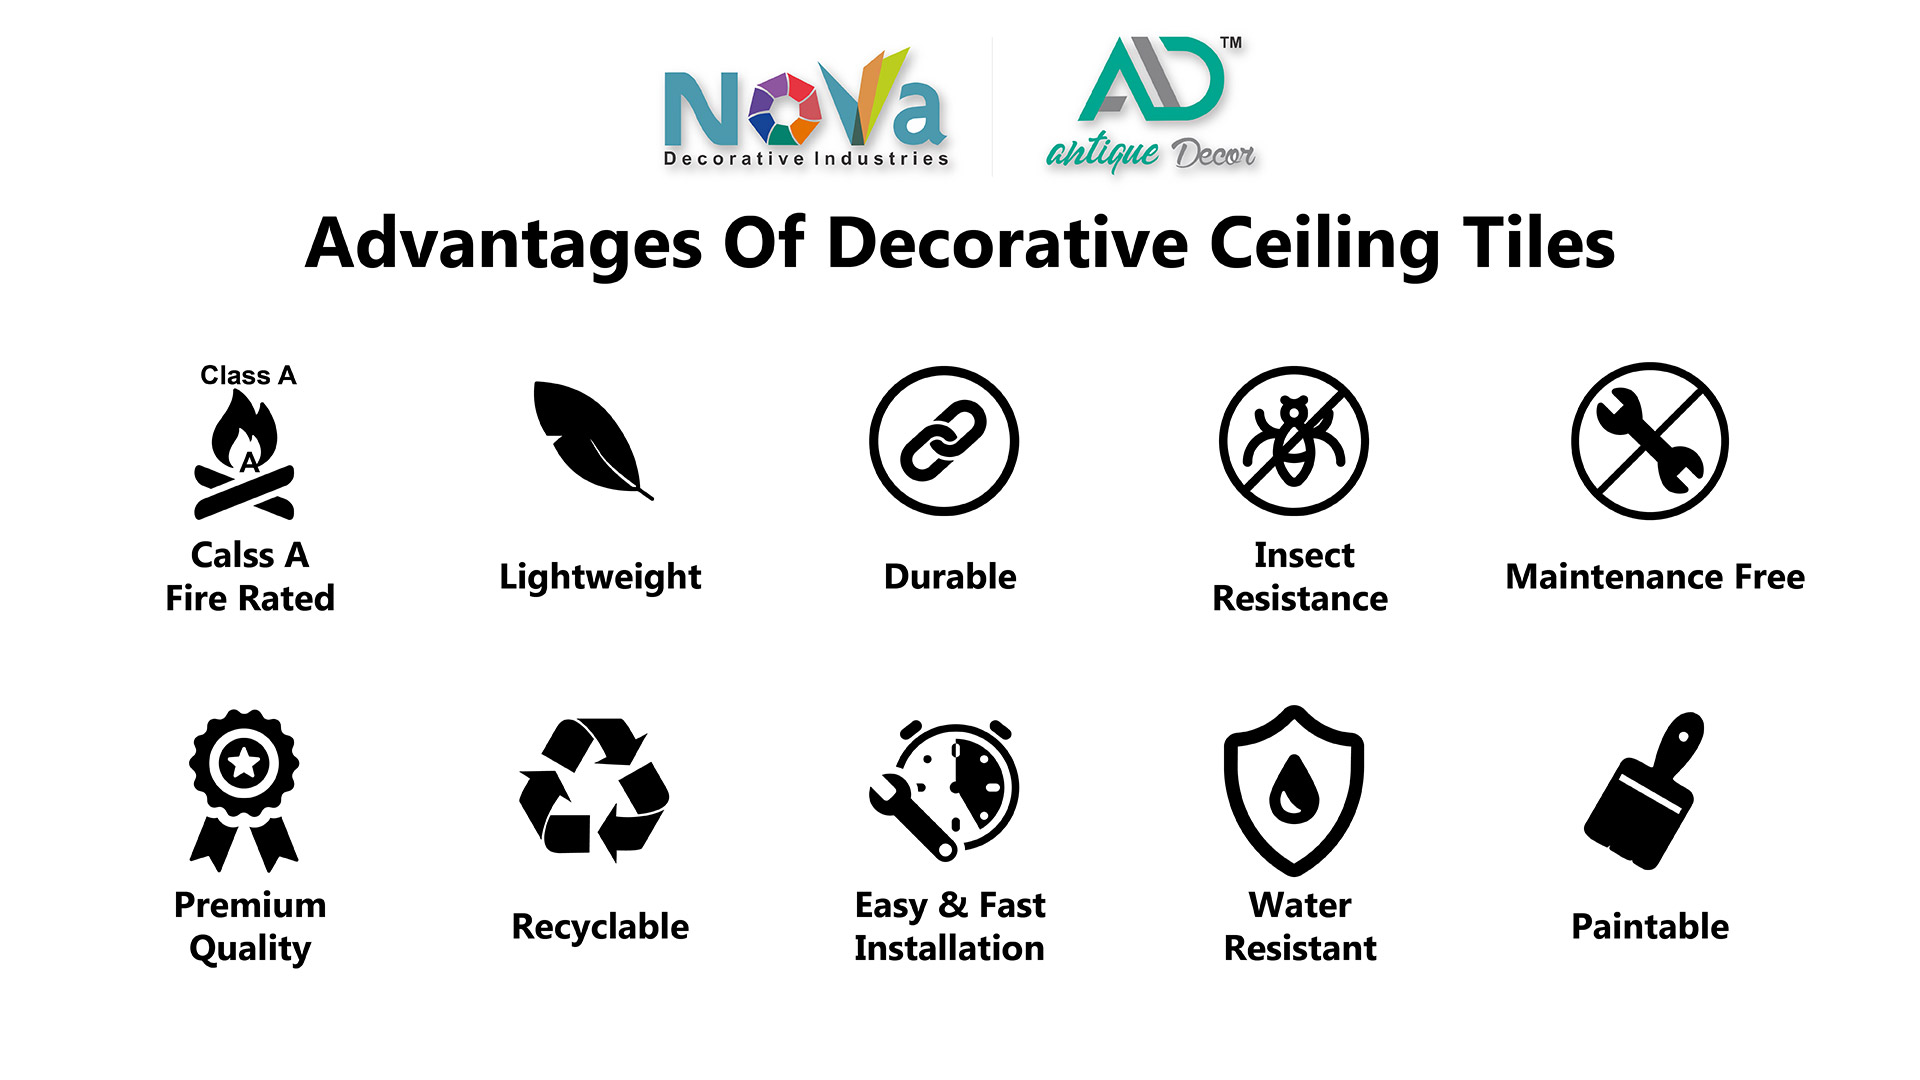 Advantages of Decorative Ceiling Tiles